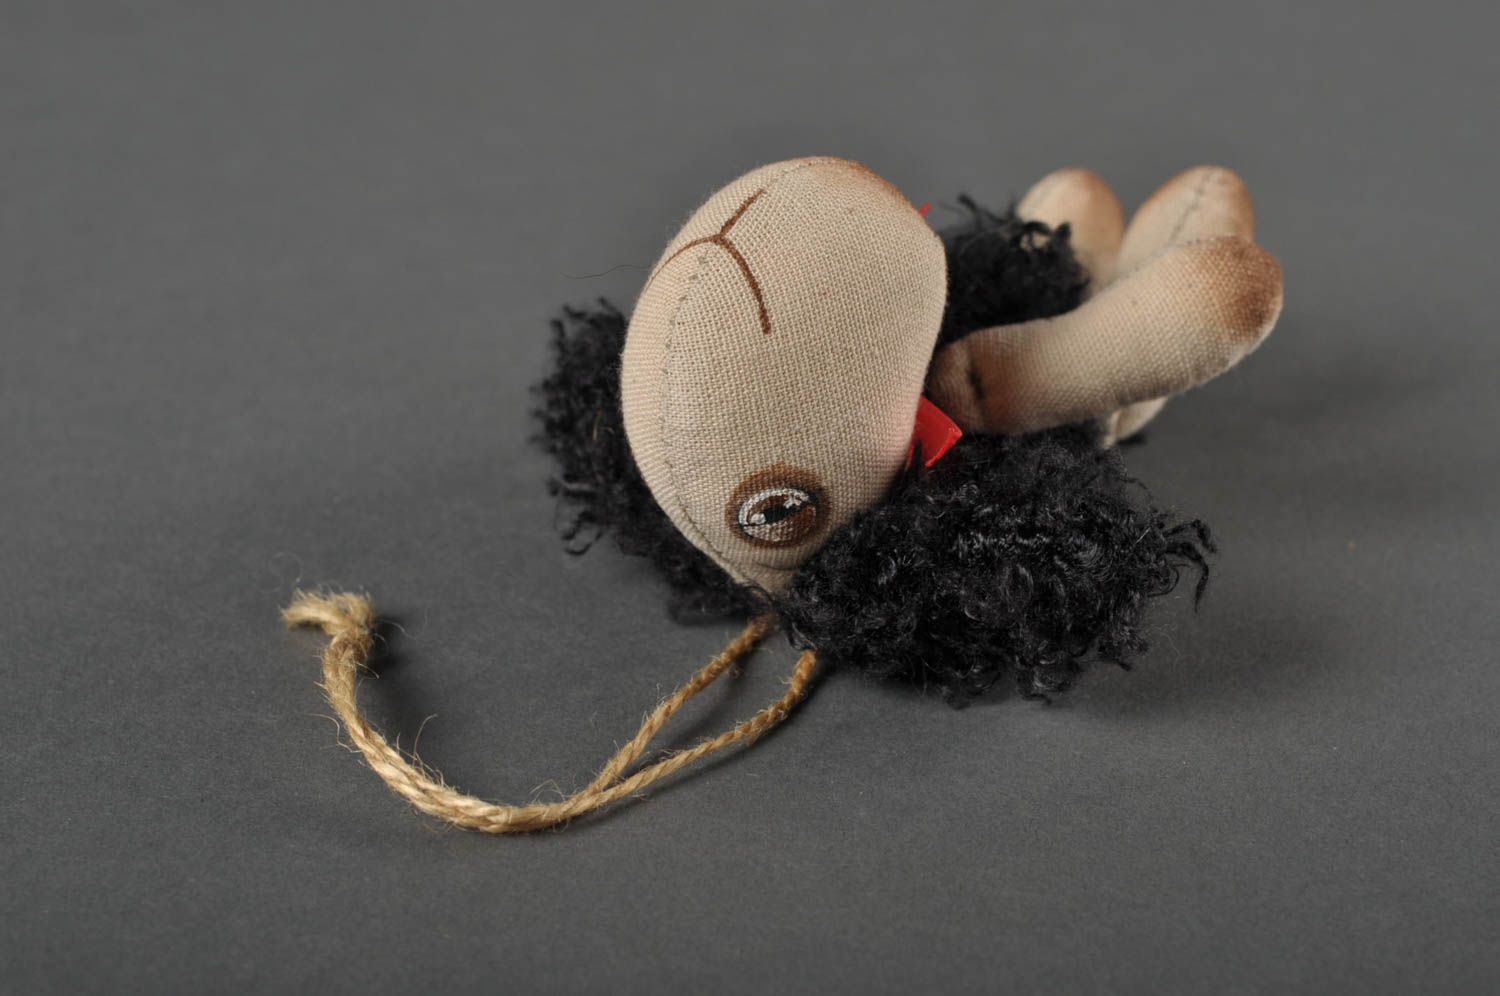 Игрушка овечка ручной работы детская игрушка расписанная акрилом мягкая игрушка фото 3